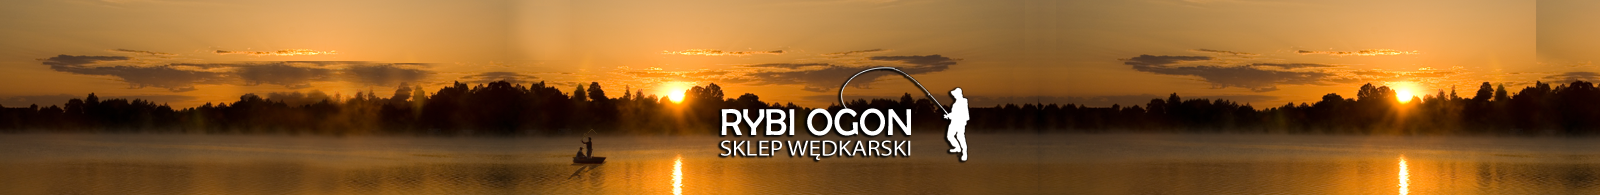 Rybi-Ogon